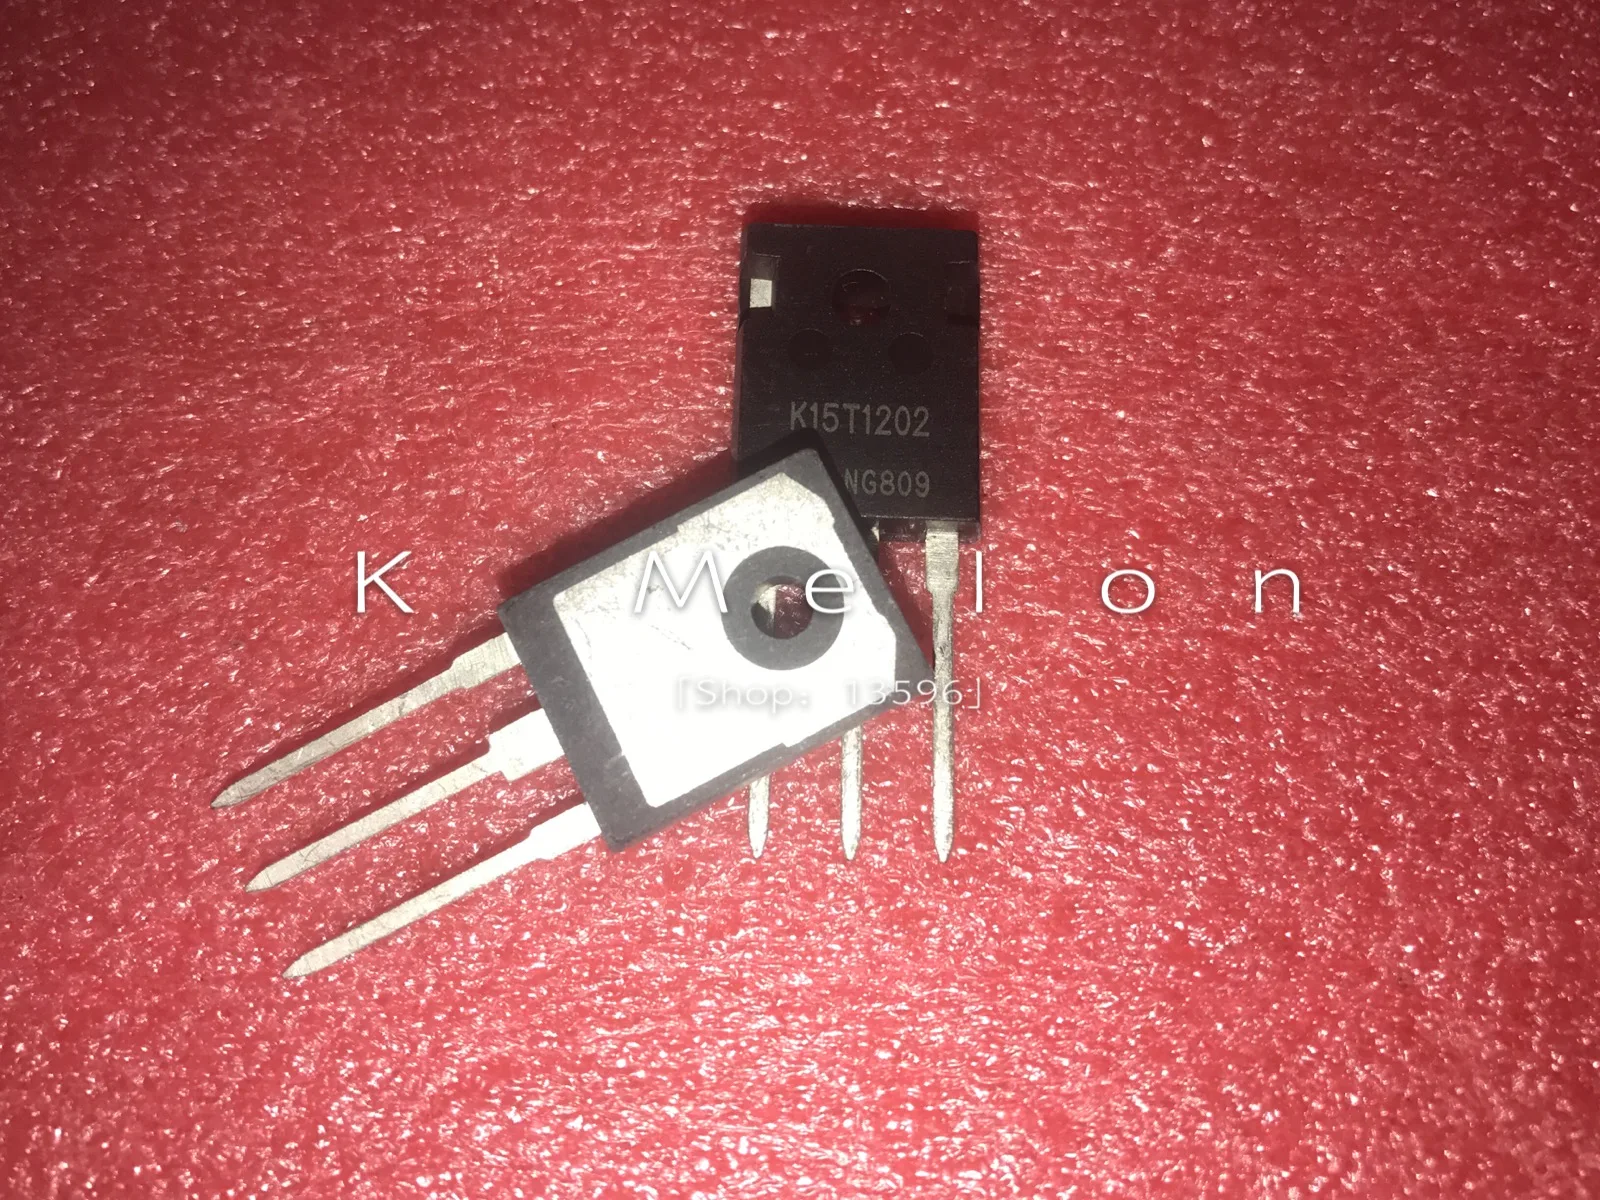 

10PCS IKW15T120 IKW15N120T2 K15T120 K15T1202 TO-247 15A 1200V Power IGBT Transistor